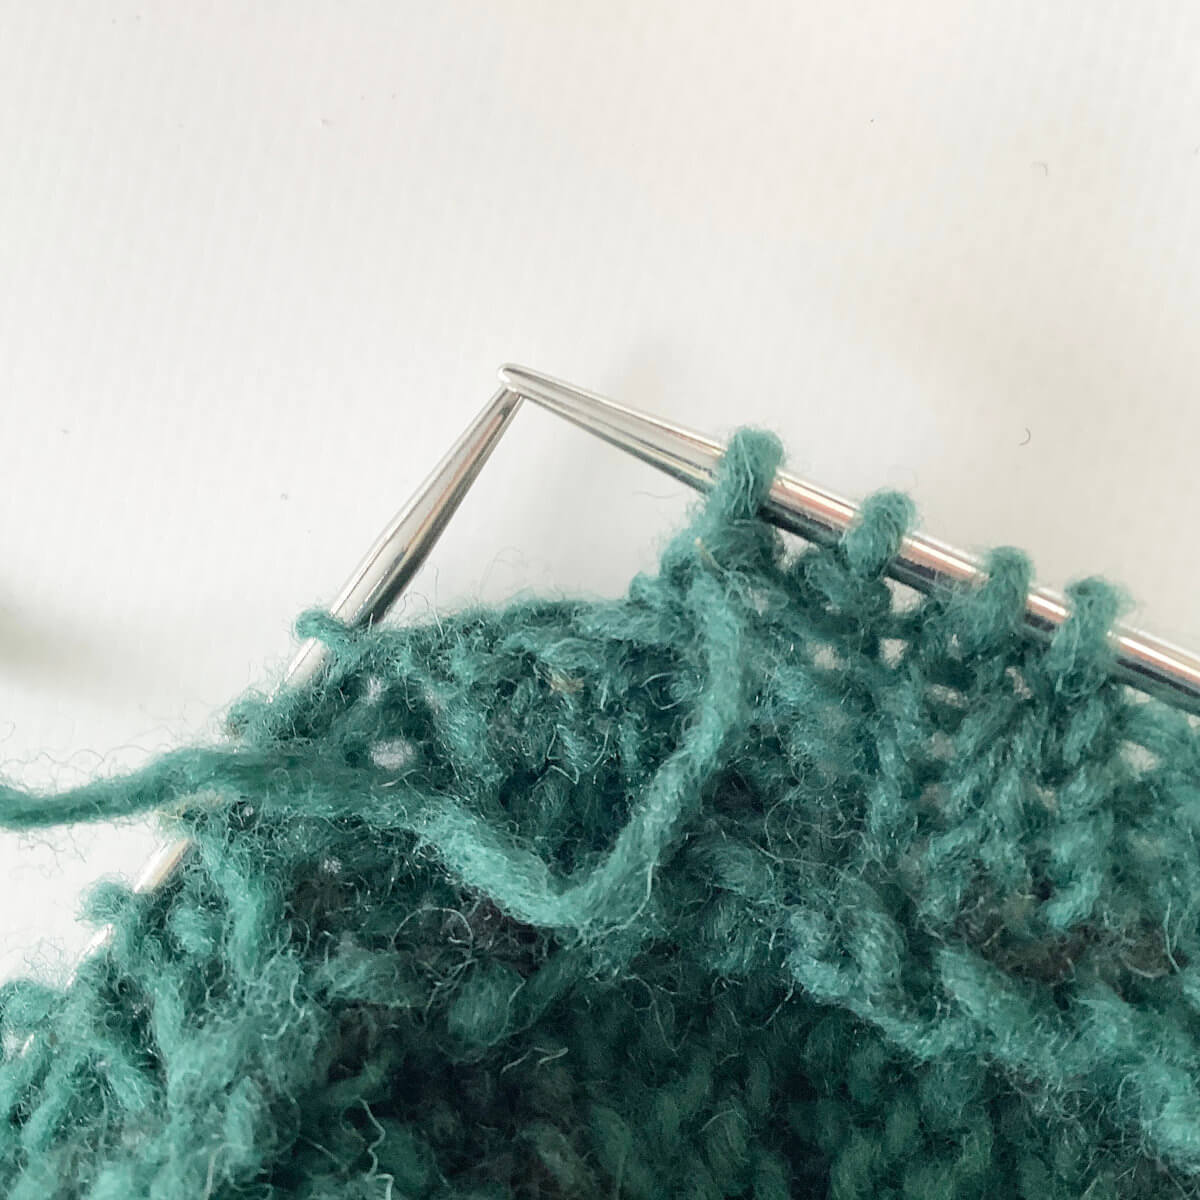 making a two-stitch buttonhole